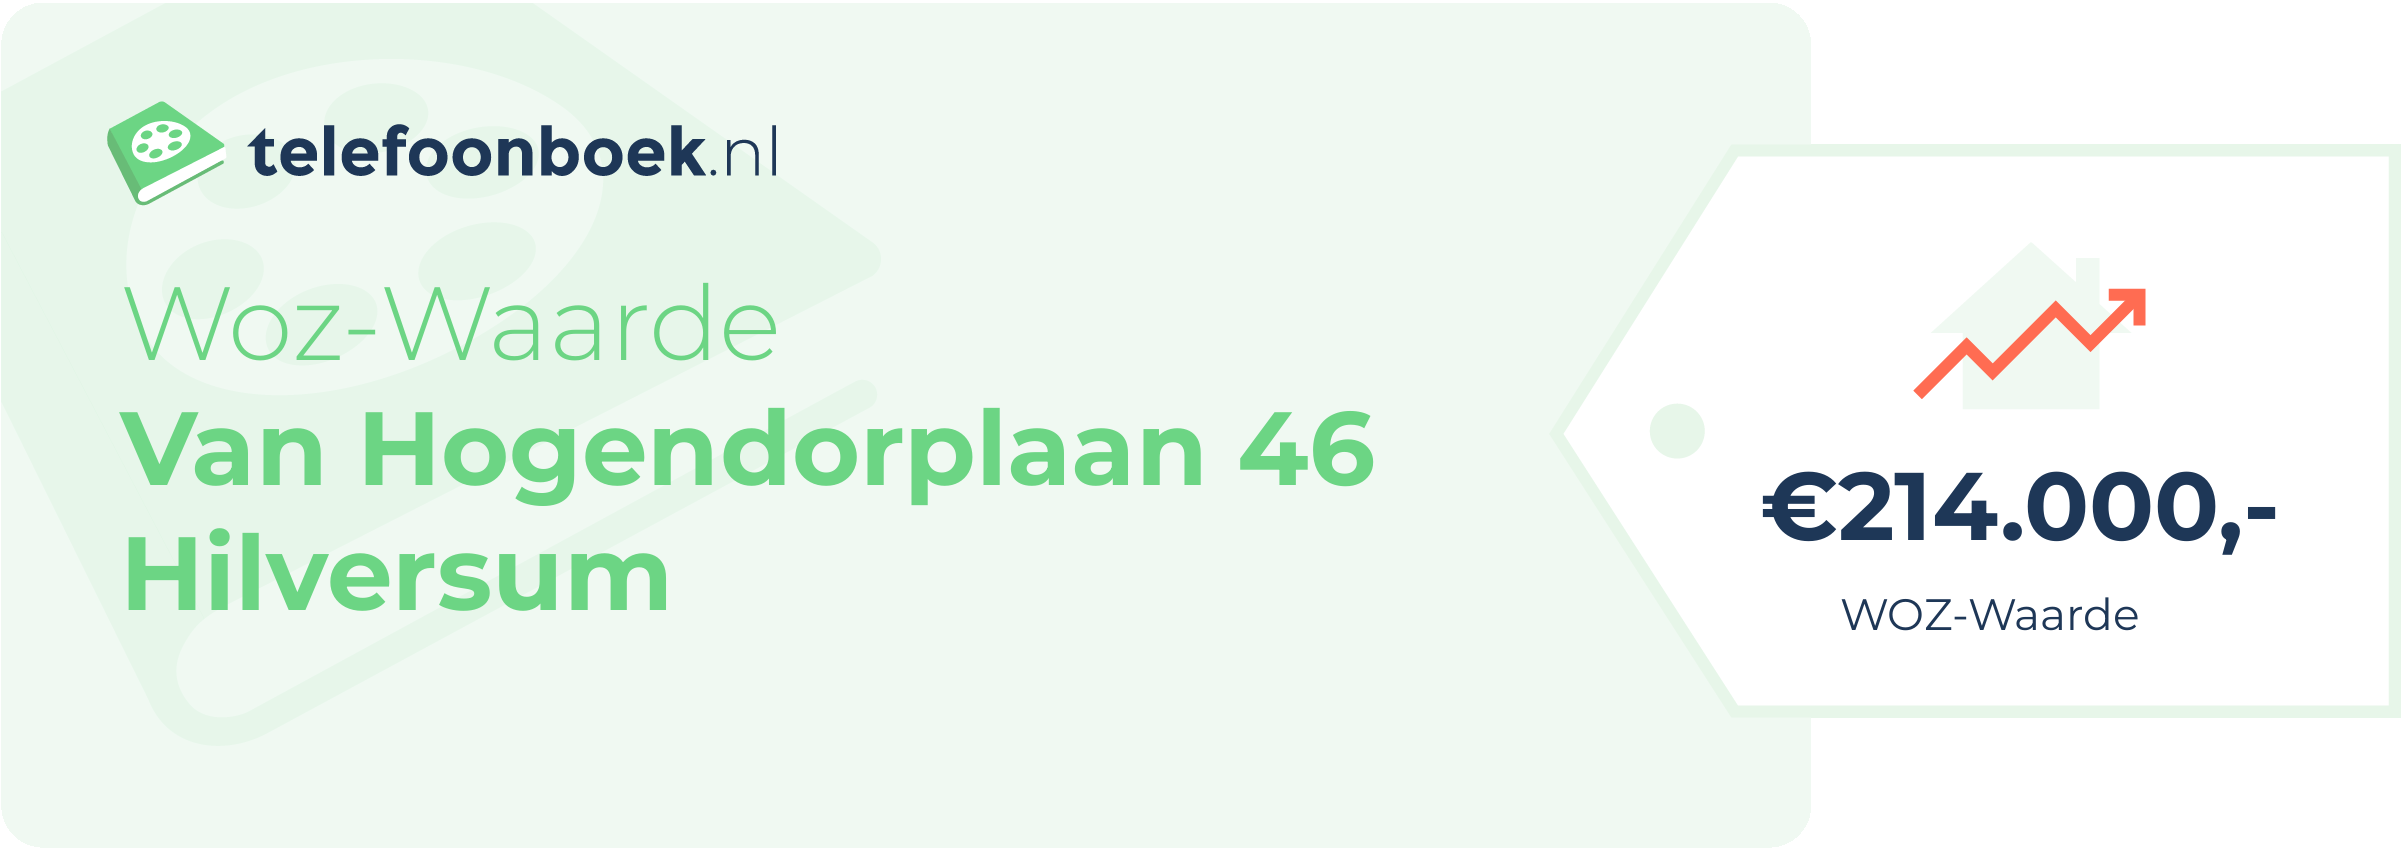 WOZ-waarde Van Hogendorplaan 46 Hilversum